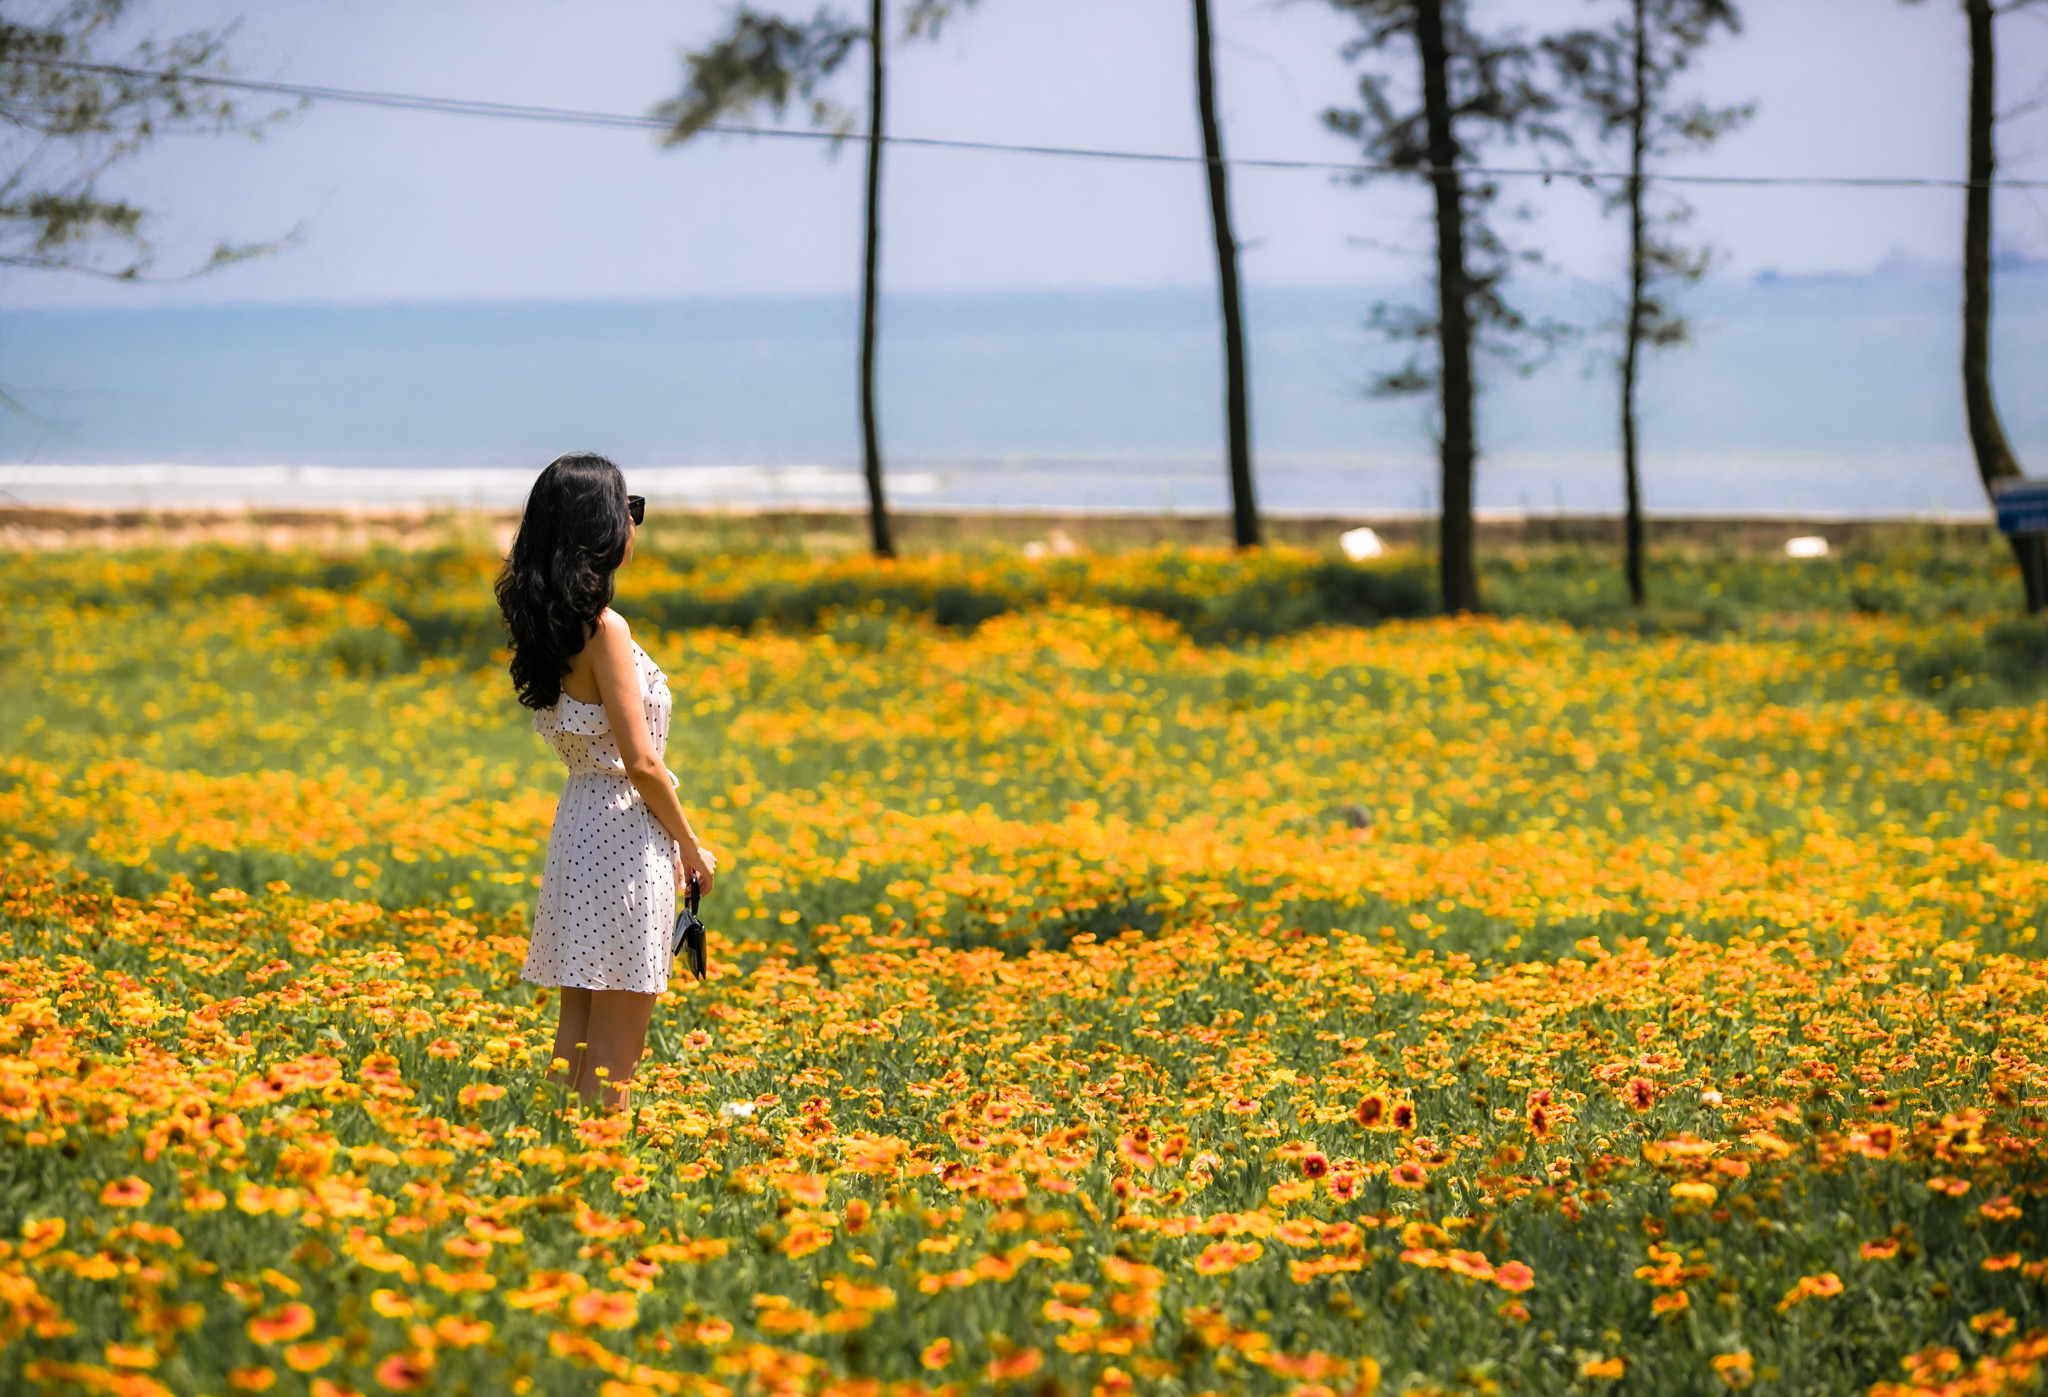 Hoa cúc biển sẽ được trồng nhiều tại các địa điểm: Khu vực đồi hoa tự nhiên phía Nam Quảng trường Bình Minh với diện tích 10.000 m2. Khu vực tại các ô bôn va đường 72m giao nhau với trục đường Bình Minh với diện tích 2.000 m2. Khu vực Công viên Hoa Cúc biển với diện tích 500 m2. Ảnh: Đức Anh